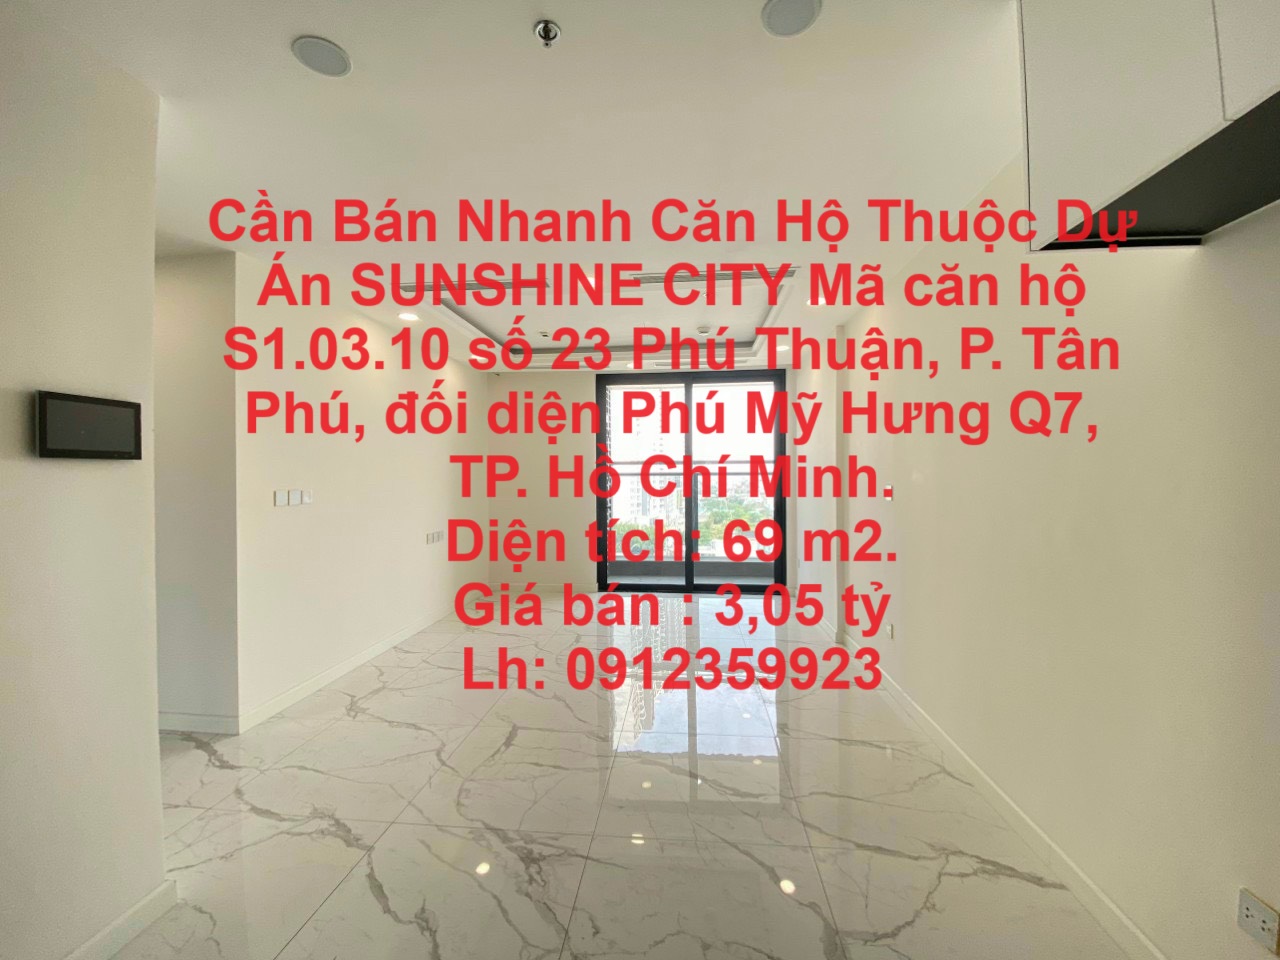 Cần Bán Nhanh Căn Hộ Thuộc Dự Án SUNSHINE CITY Phú Thuận, phường Tân phú, Quận 7, TP Hồ Chí Minh - Ảnh chính